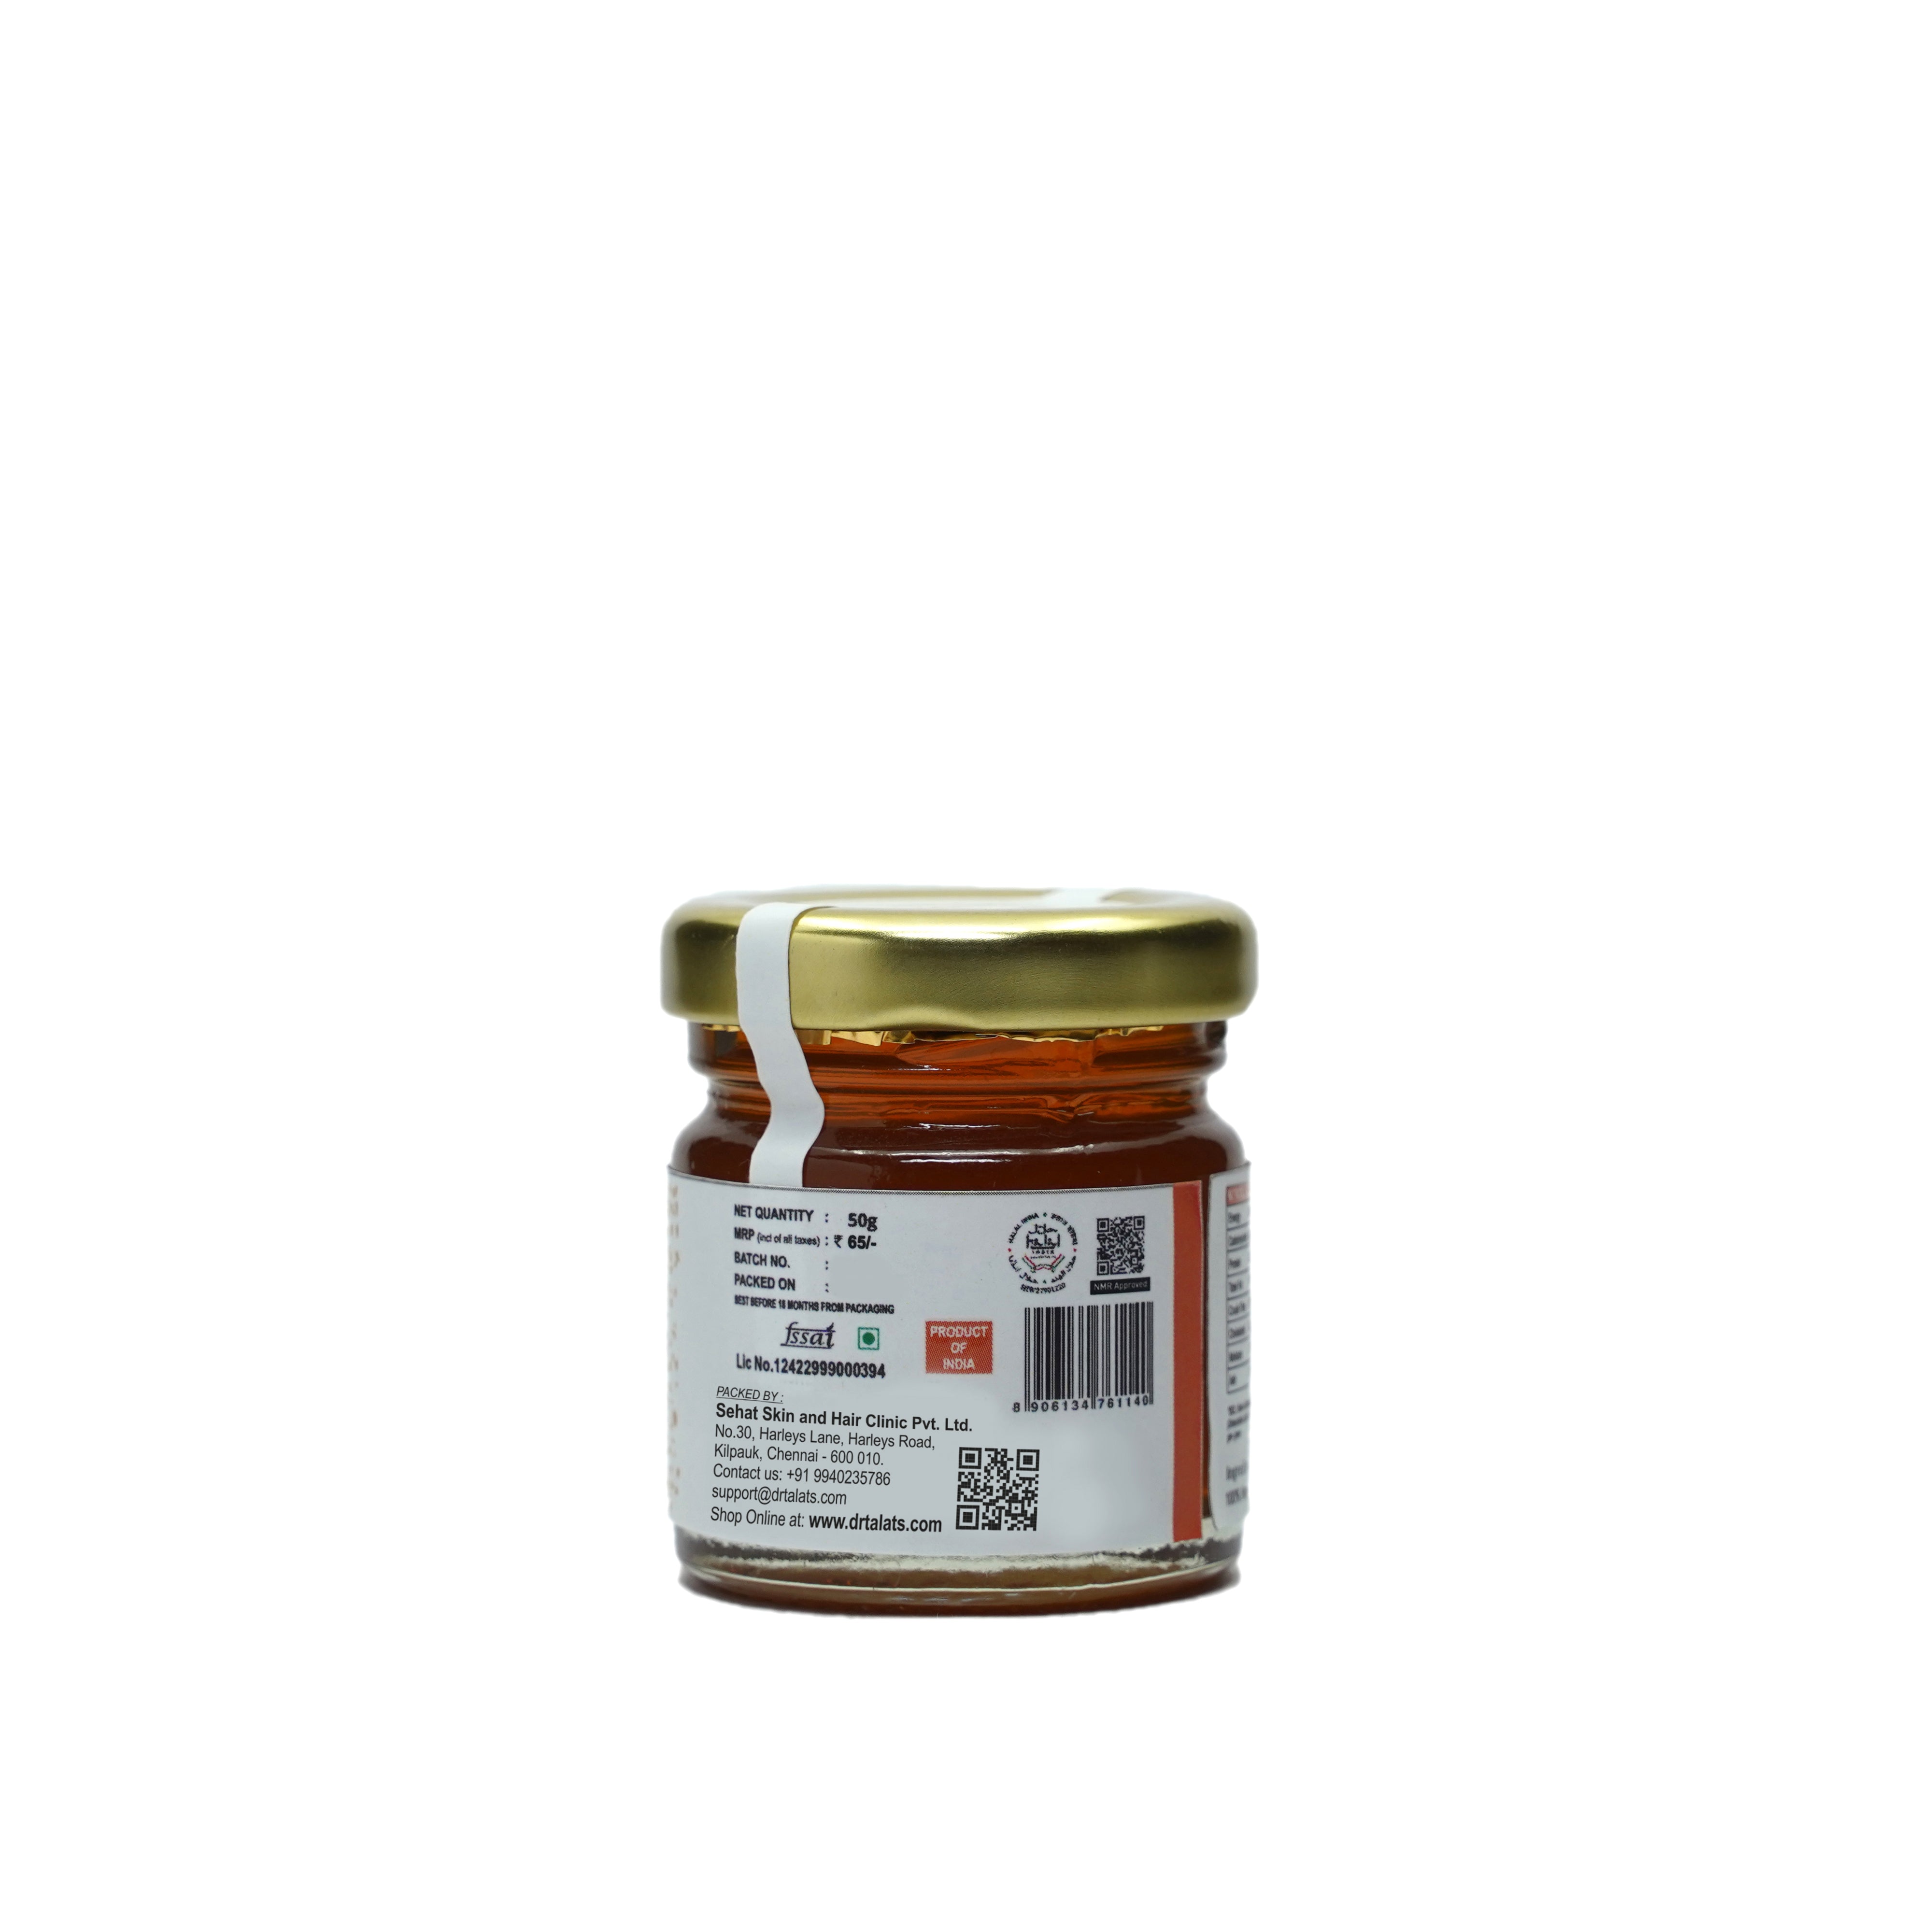 Kashmir Honey (Agmark Special Grade)